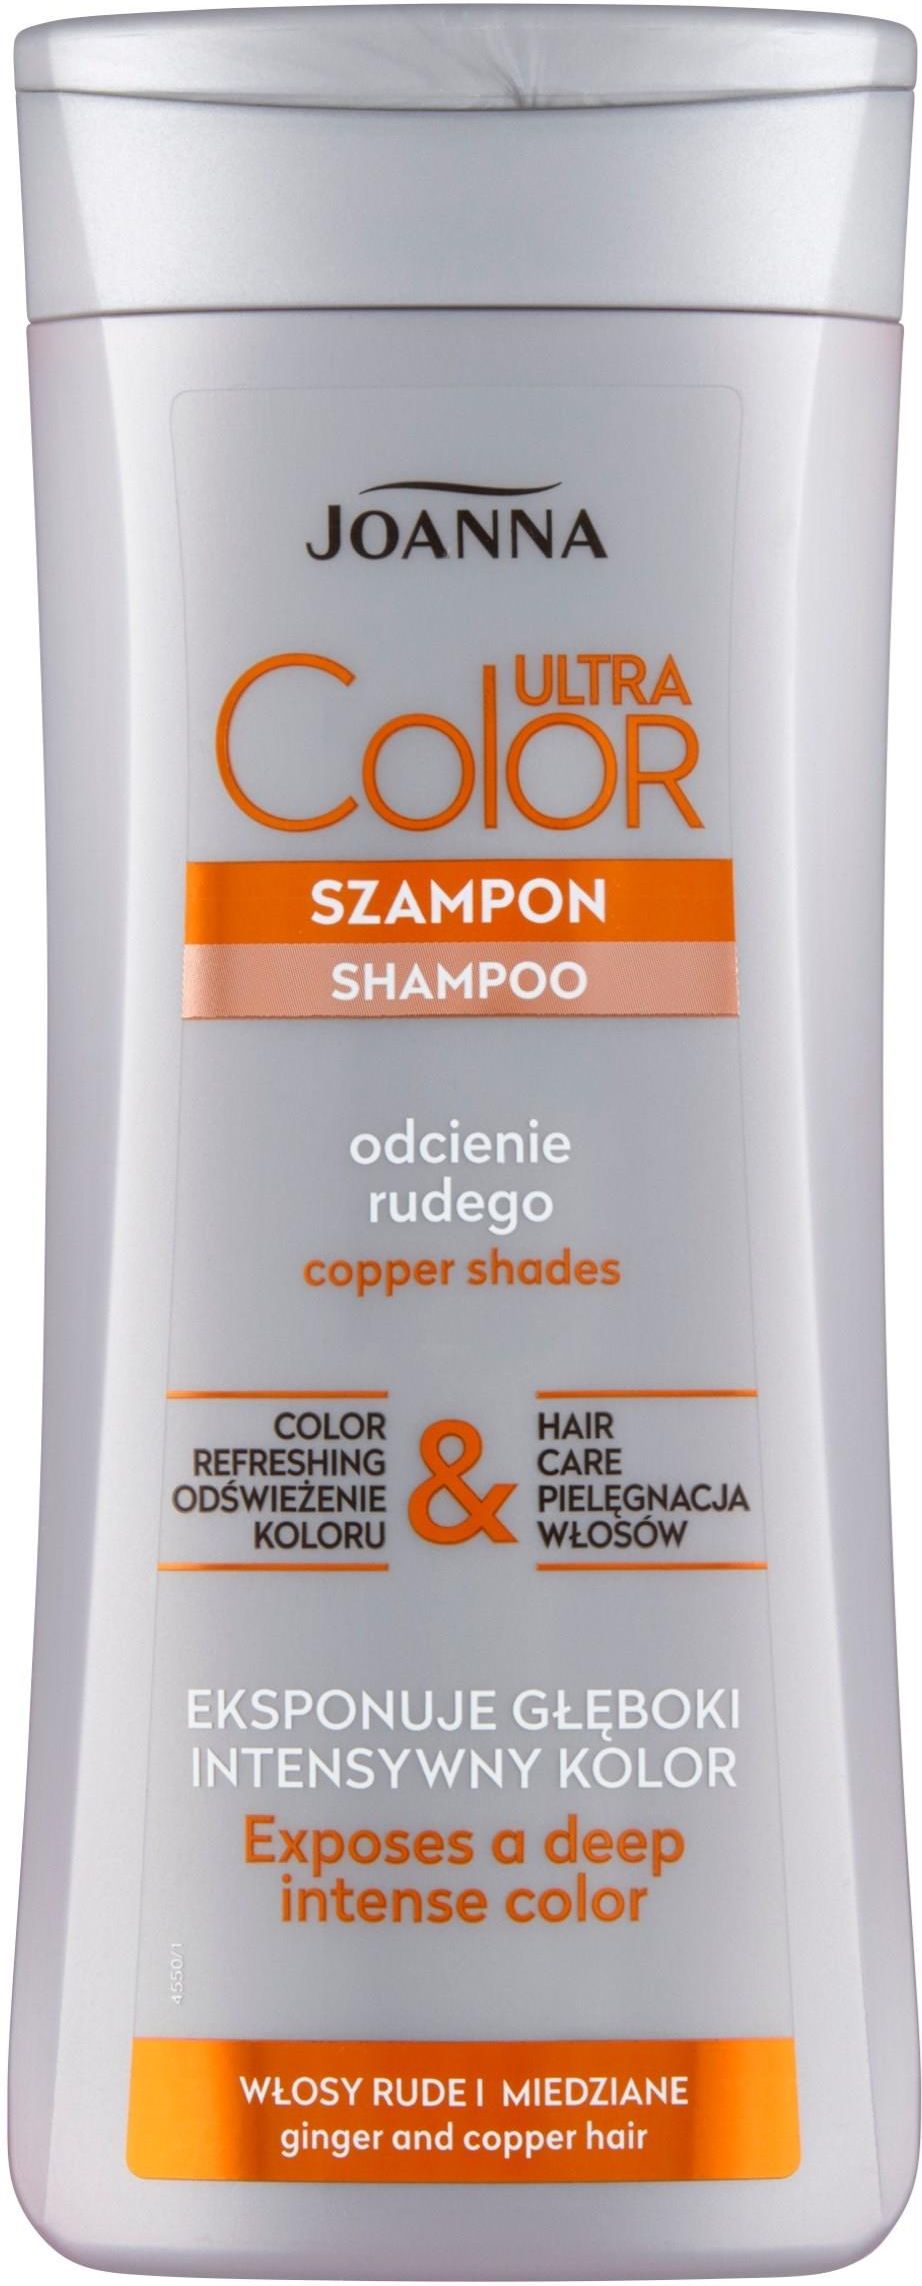 szampon dla rudych włosów